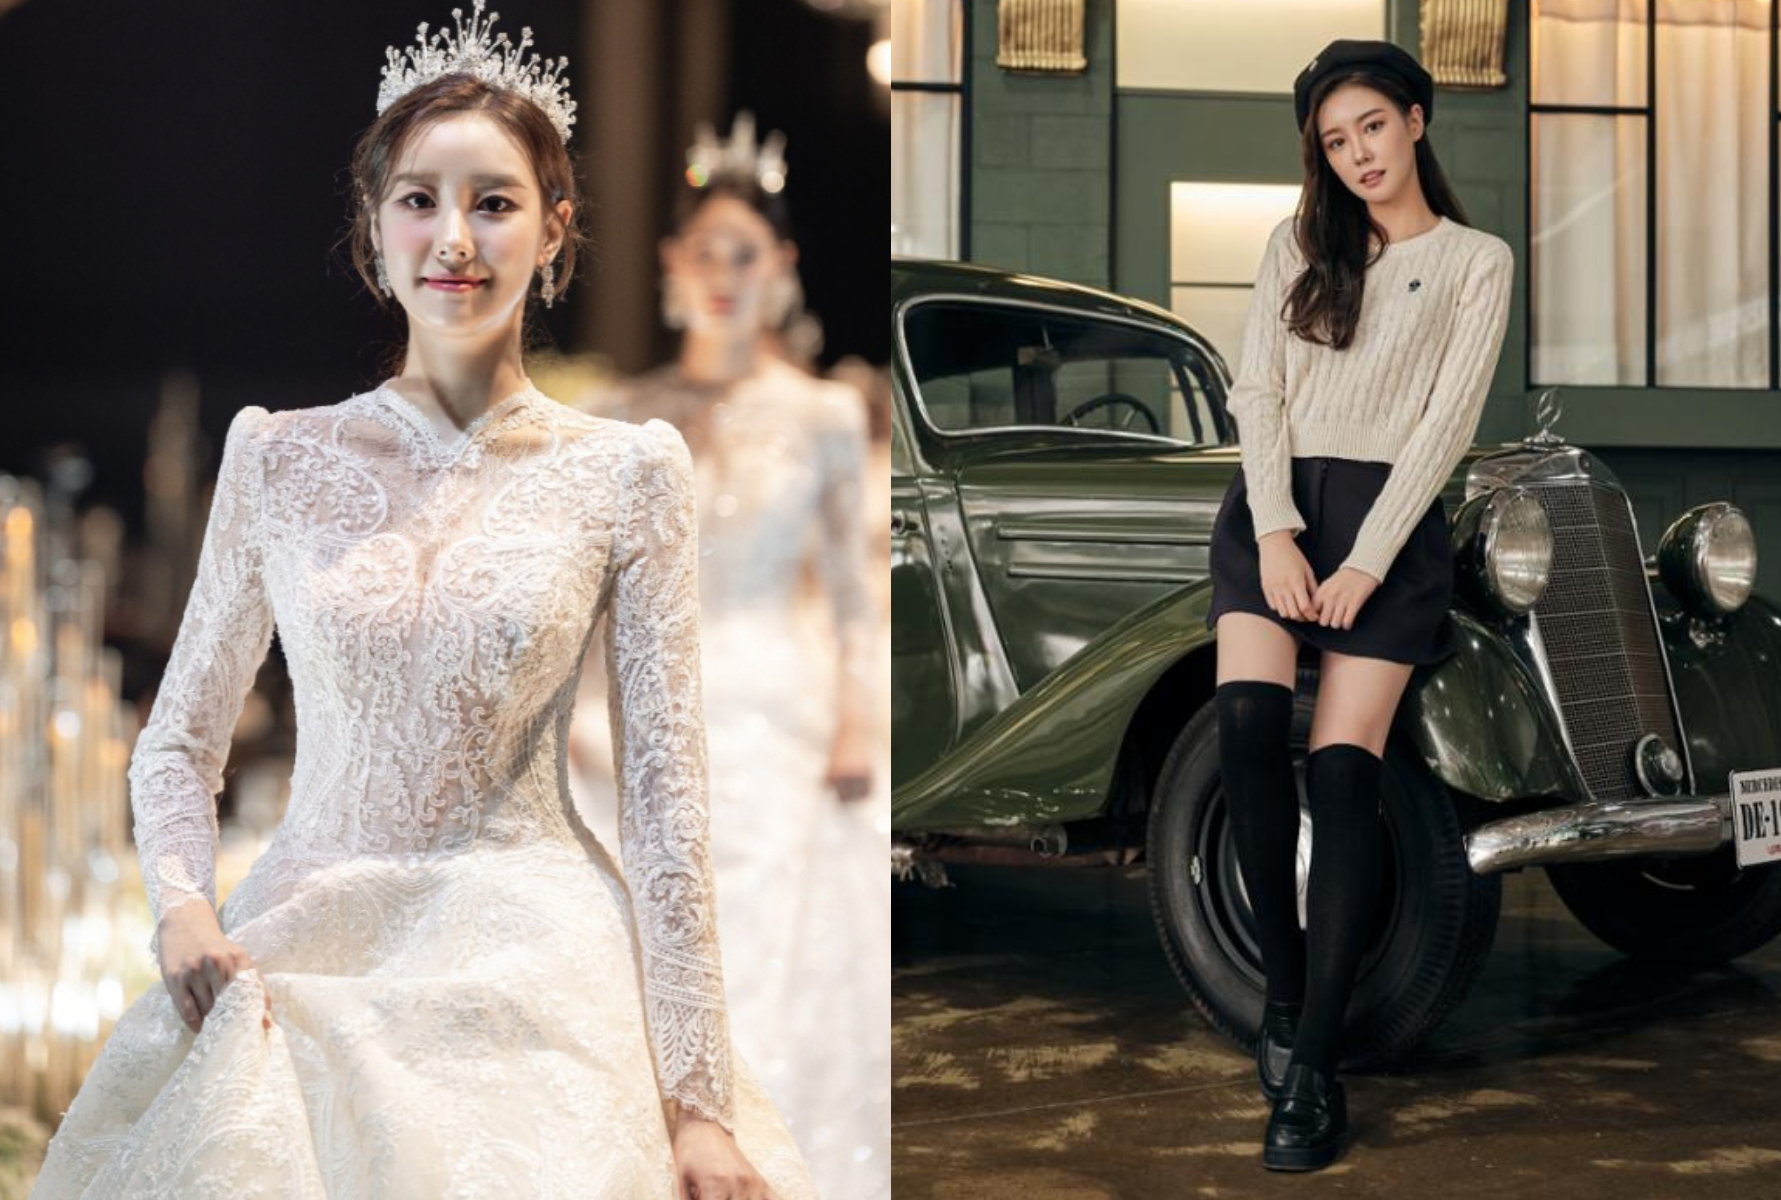 Tân Hoa hậu Hàn Quốc gây sốt: Mỹ nhân 23 tuổi đẹp tựa diễn viên, sở hữu đôi chân siêu dài - Ảnh 4.